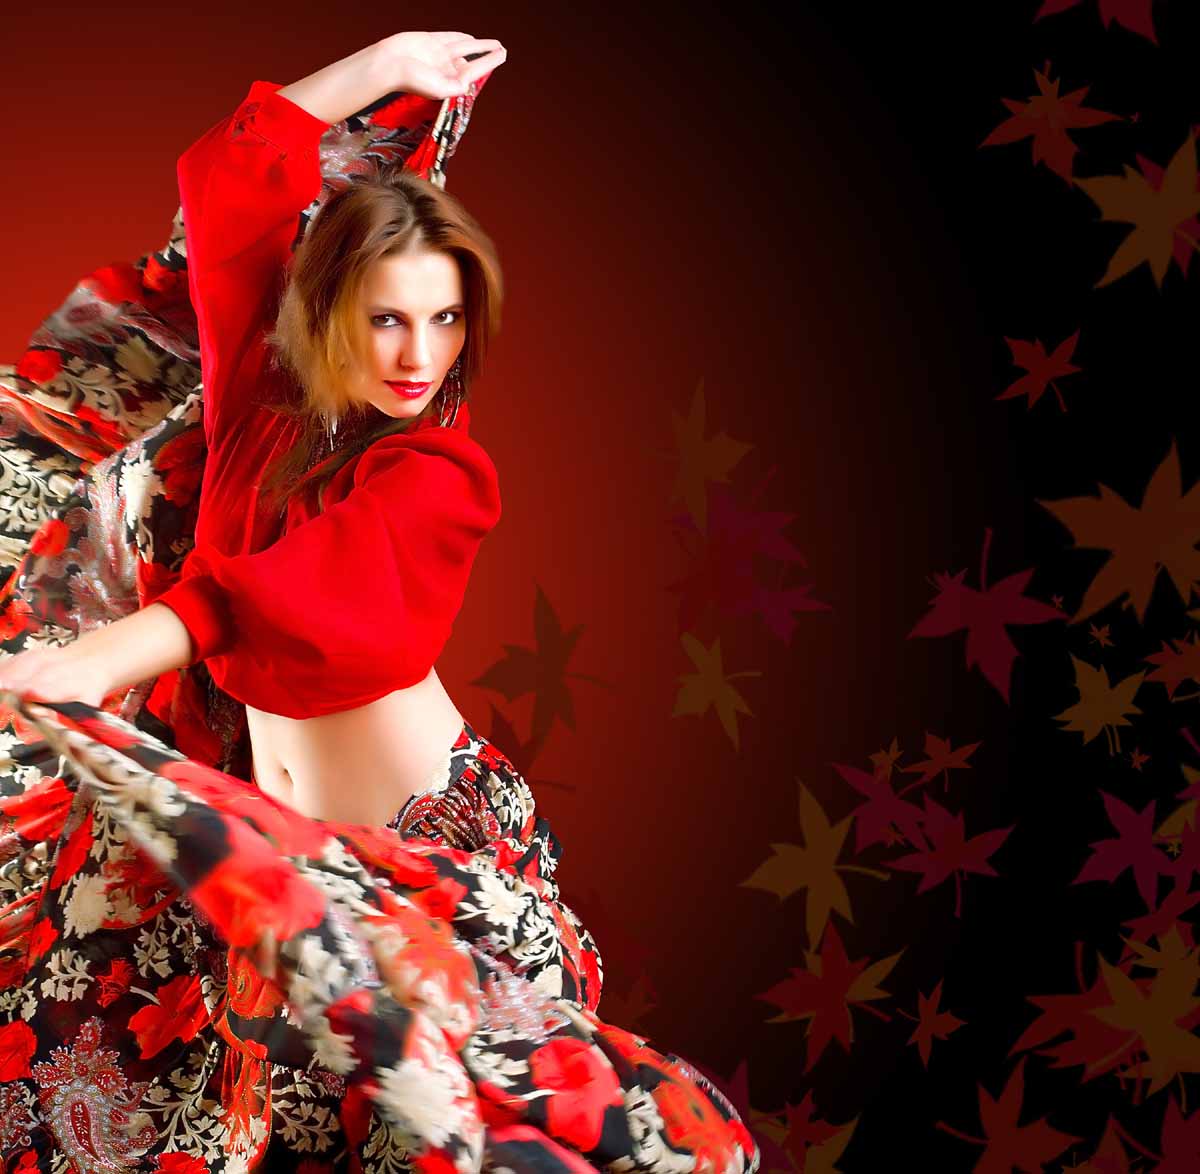 wallpaper gambar orang,red,beauty,fashion model,flamenco,fashion